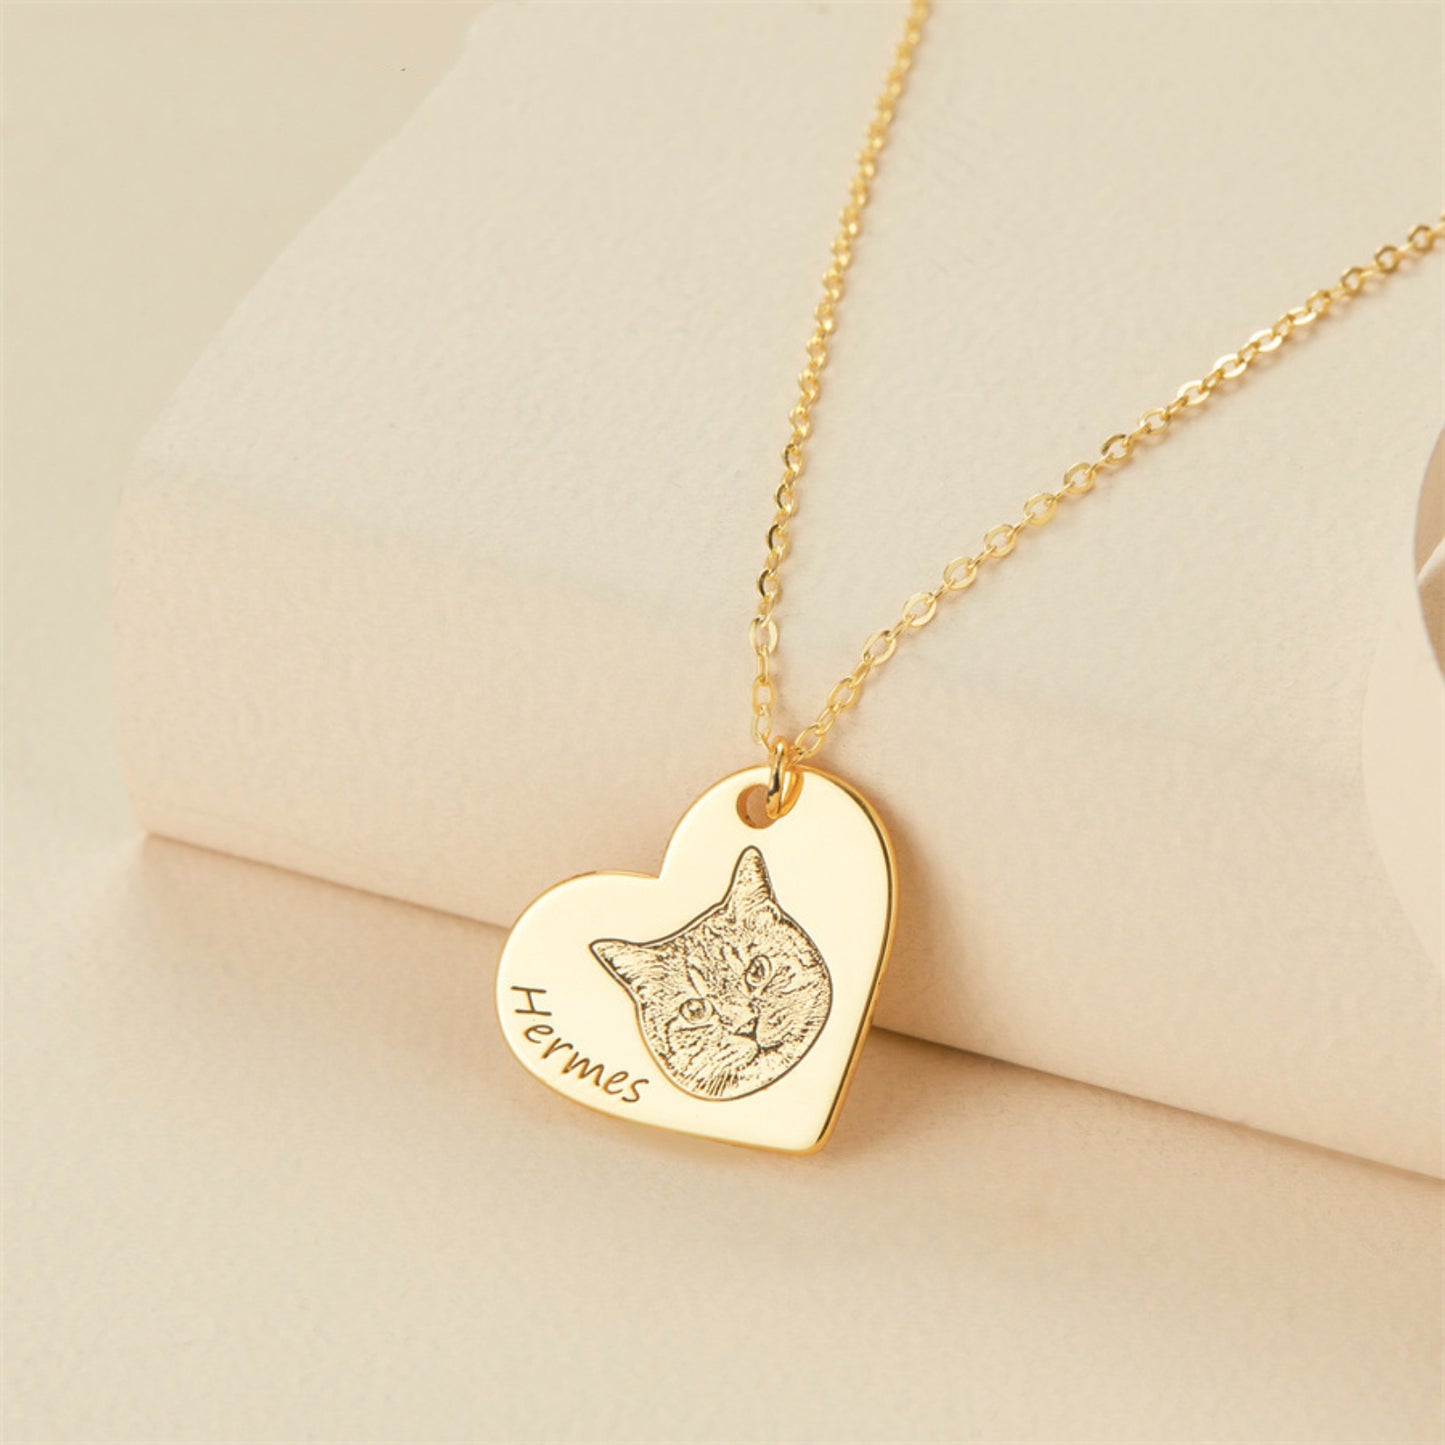 Personalized Pet Portrait Heart Pendant Necklace for Pet Lovers